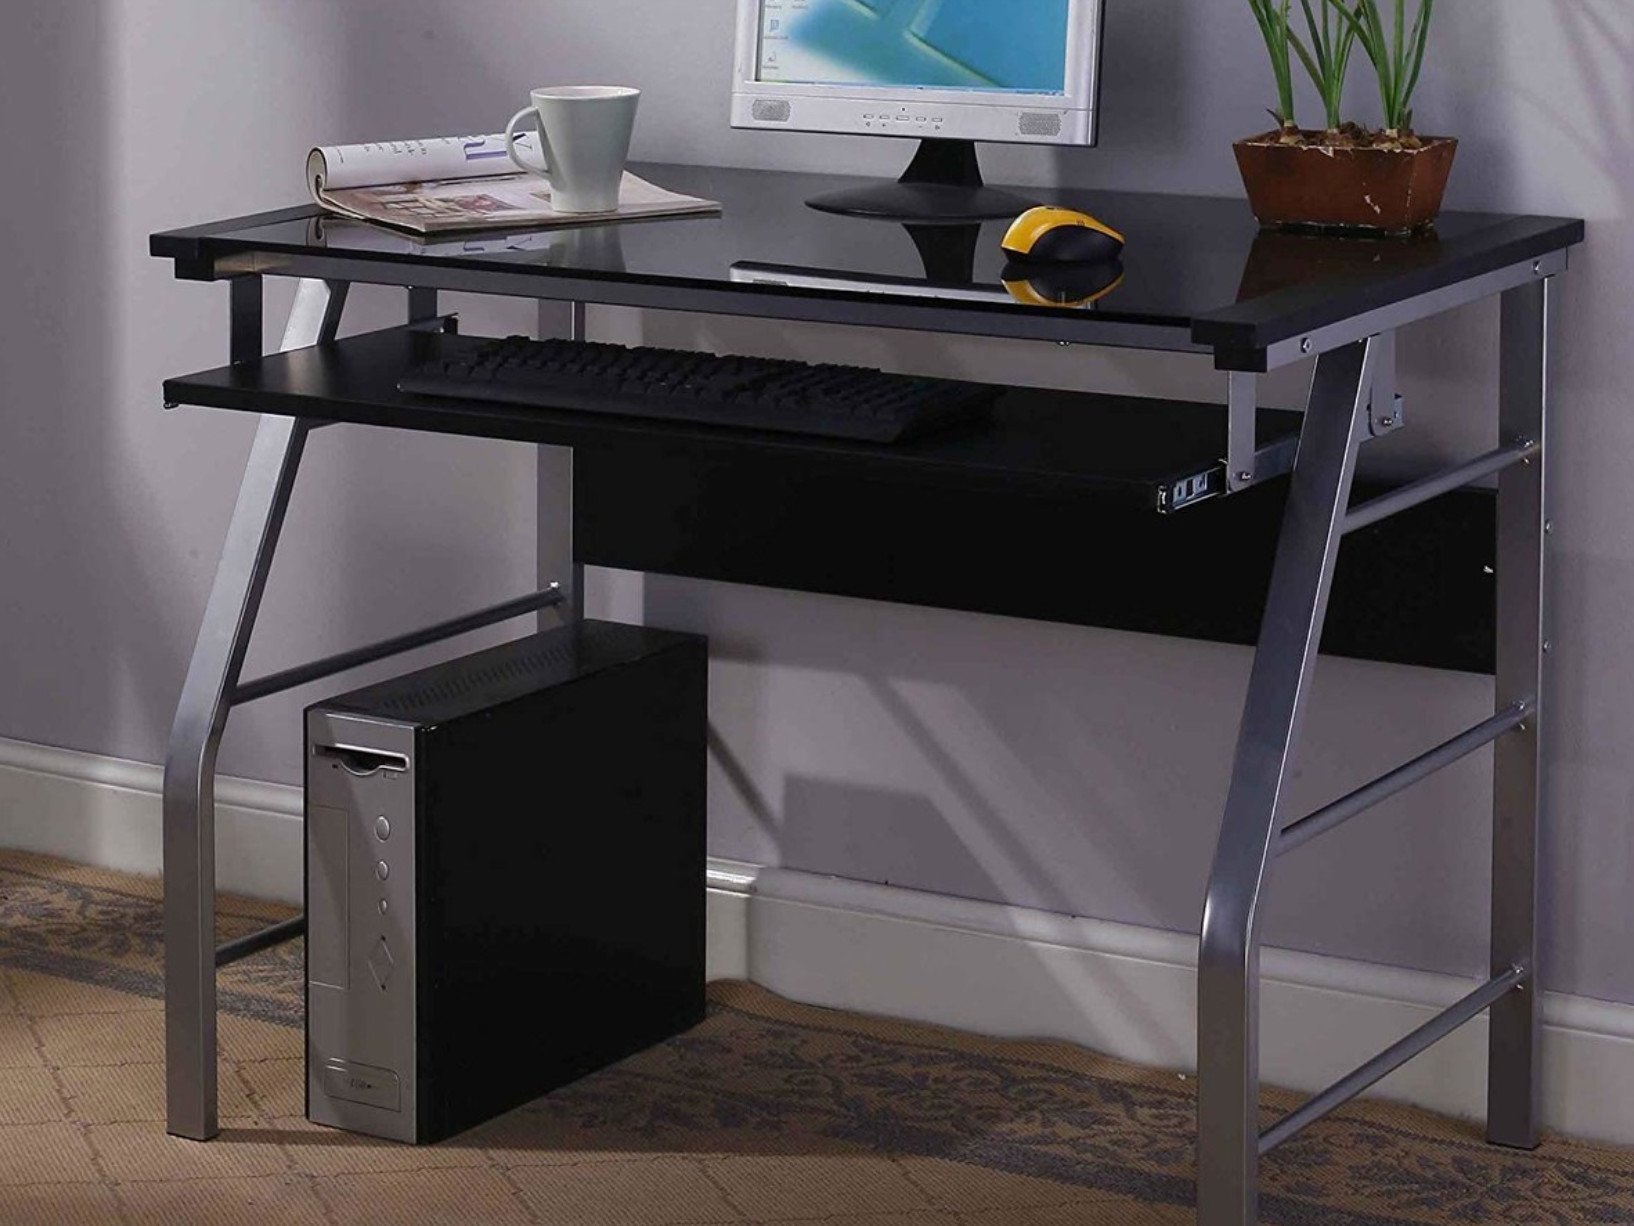 Best Computer Desks In 2022 Windows, Best Computer Desk With Keyboard Tray